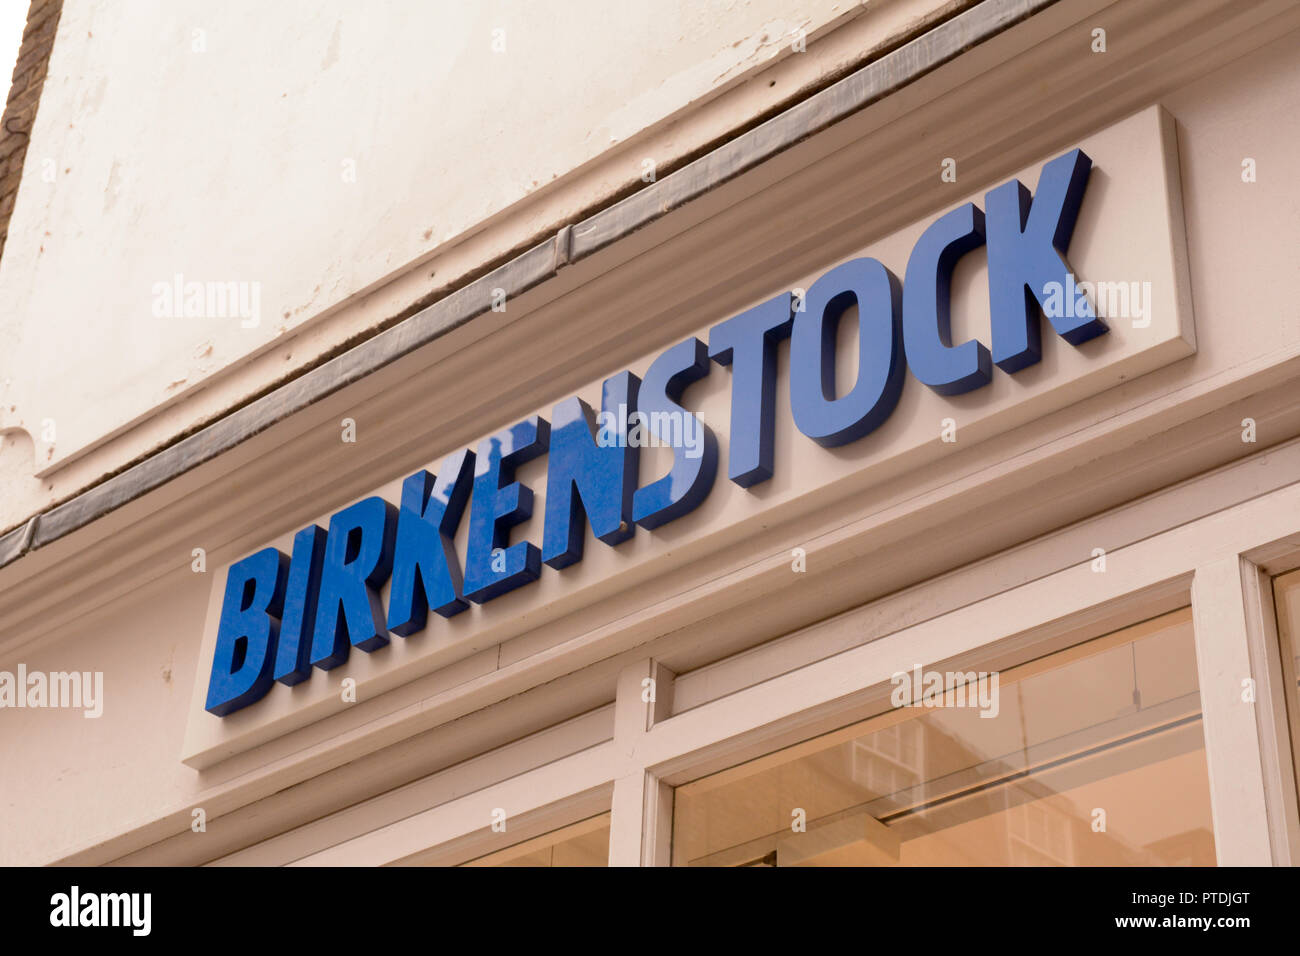 Birkenstock shop sign Stock Photo